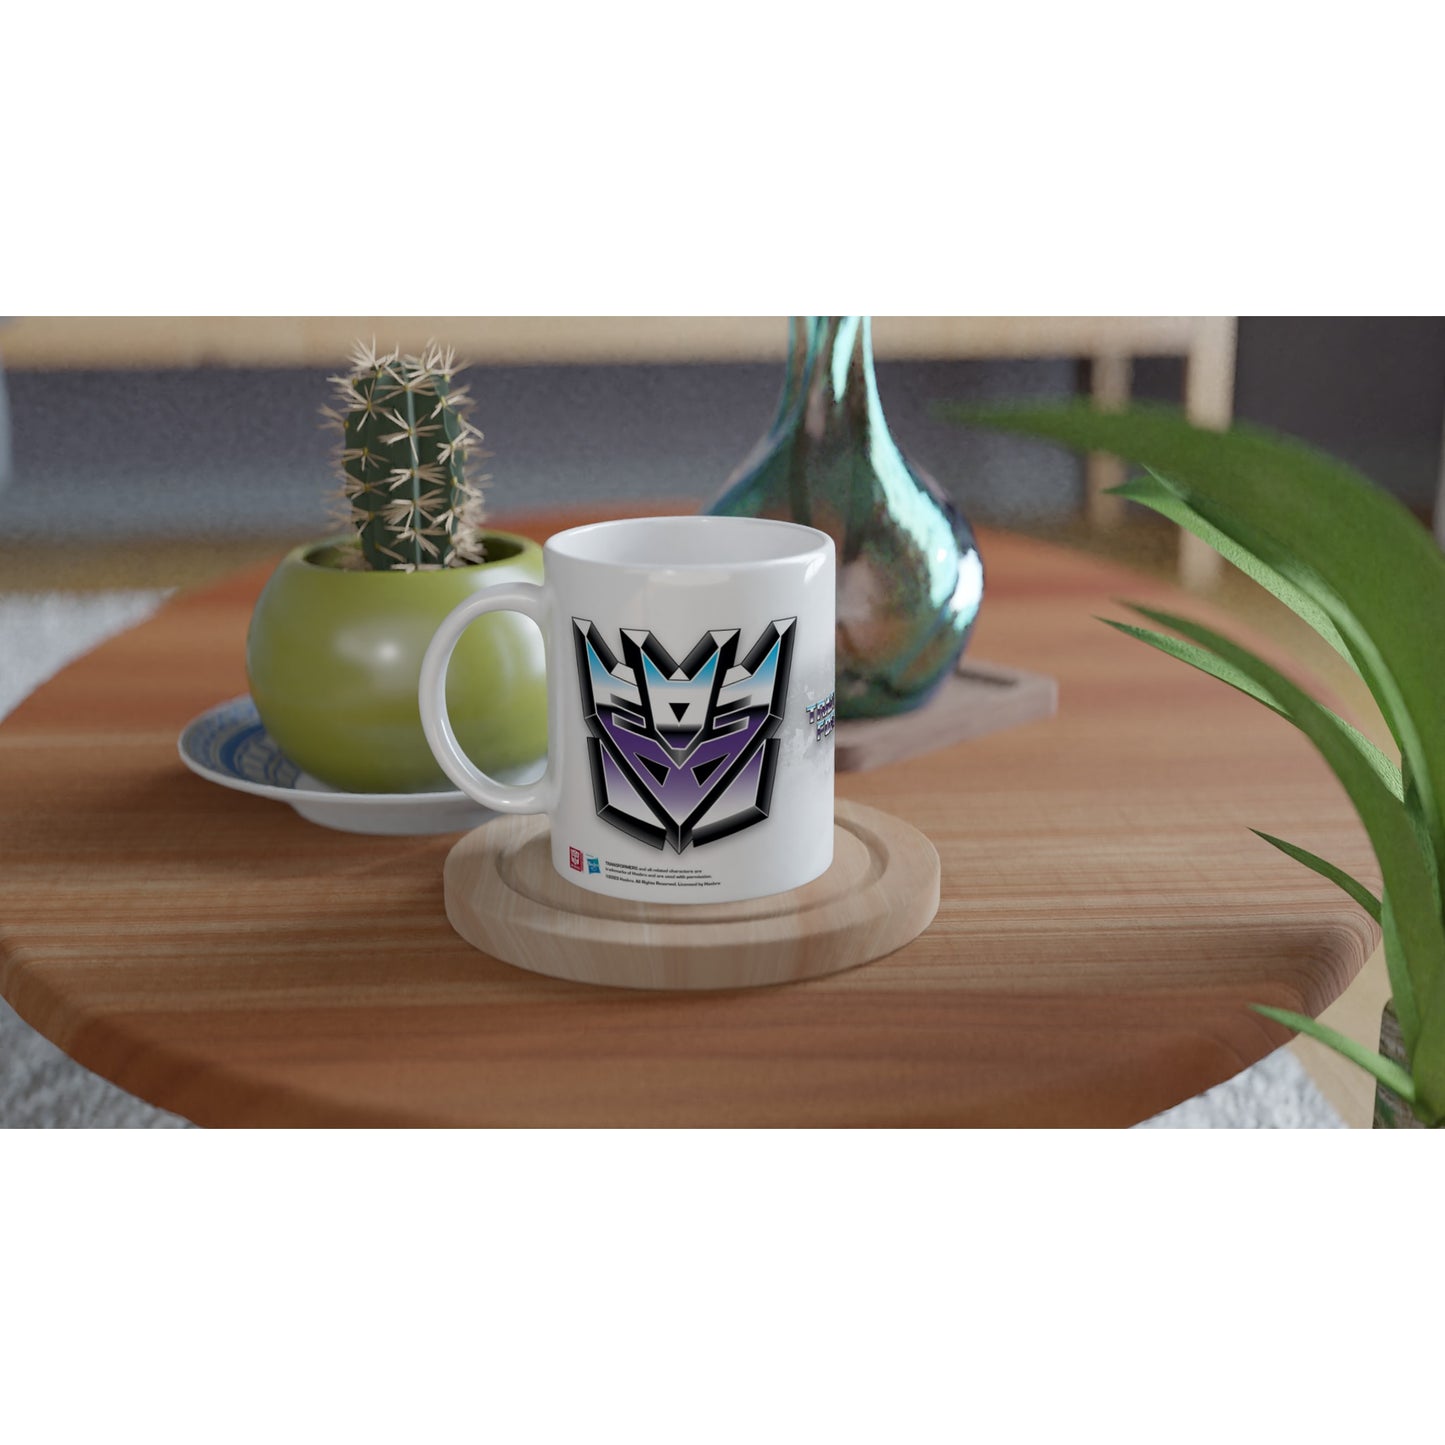 Offizielle Transformers-Tasse – Decepticon – 330 ml, weiße Tasse